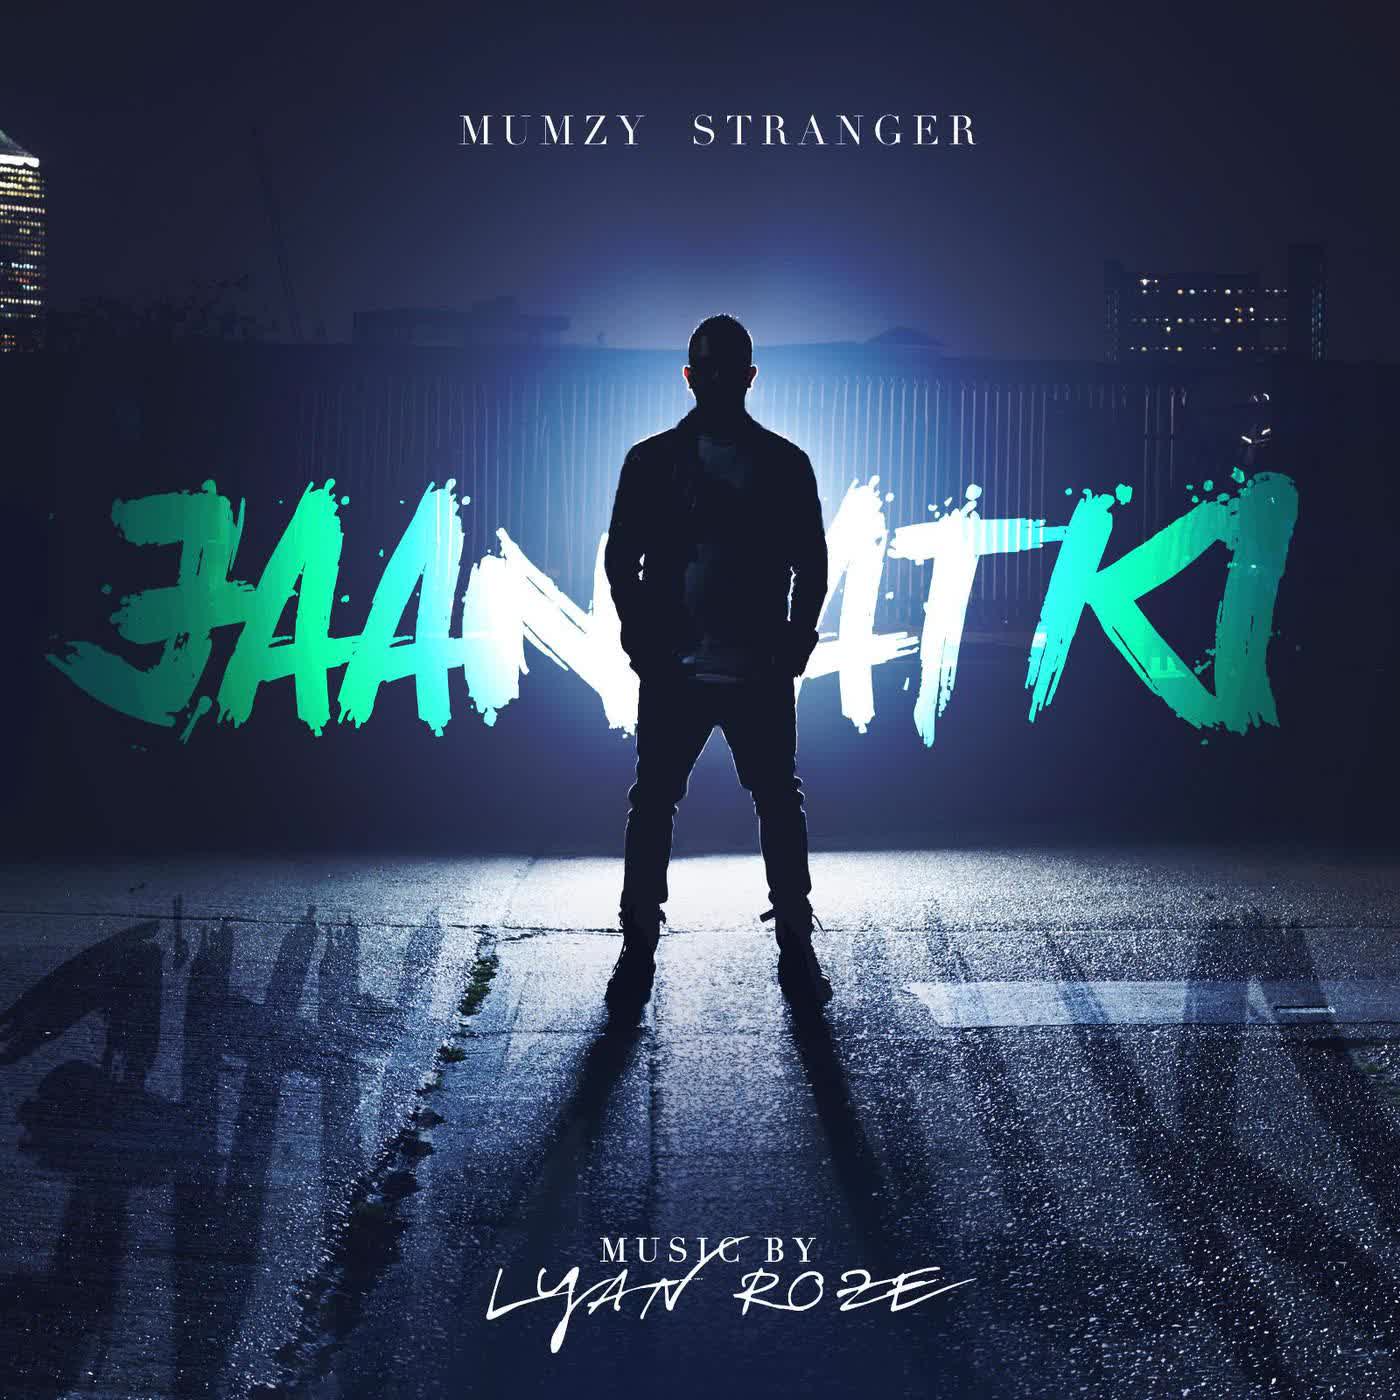 Jaan Atki Mumzy Stranger  Mp3 song download